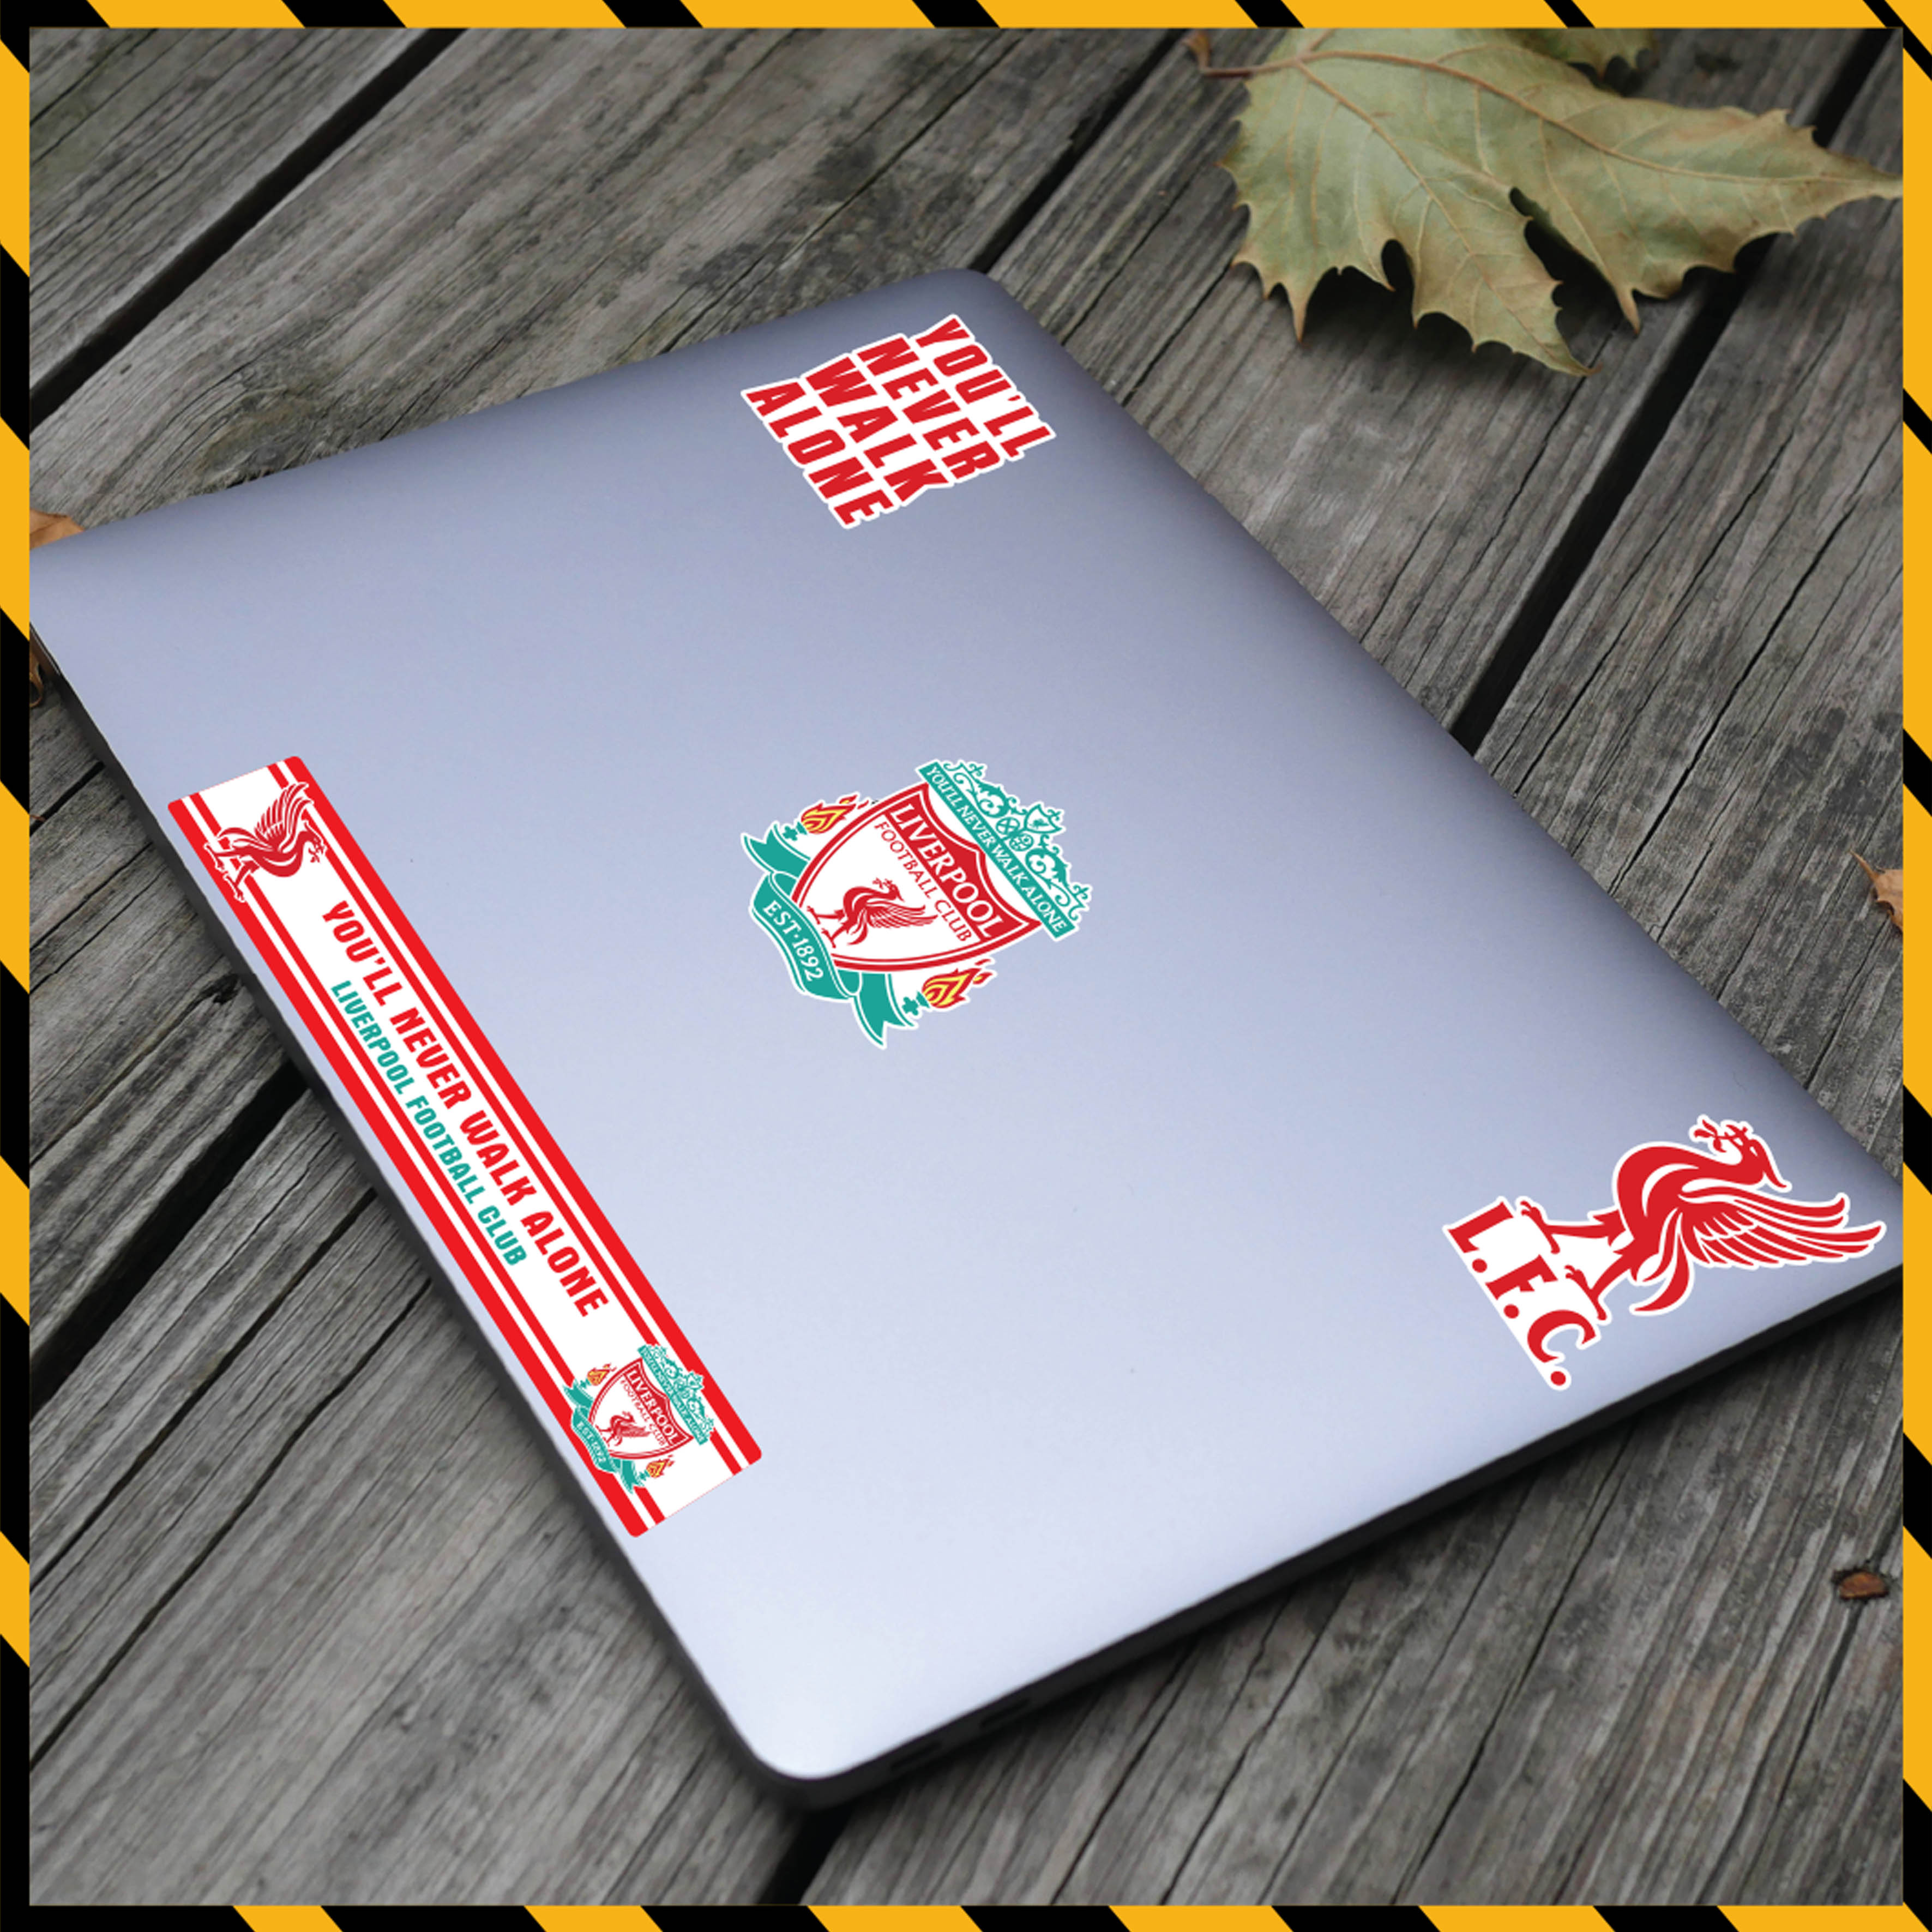 Hình Dán Sticker CLB Liverpool Dán Xe, Dán Nón, Điện Thoại, Laptop - Logo Đội Bóng Chất Liệu Chống Thấm Nước, Bền Màu